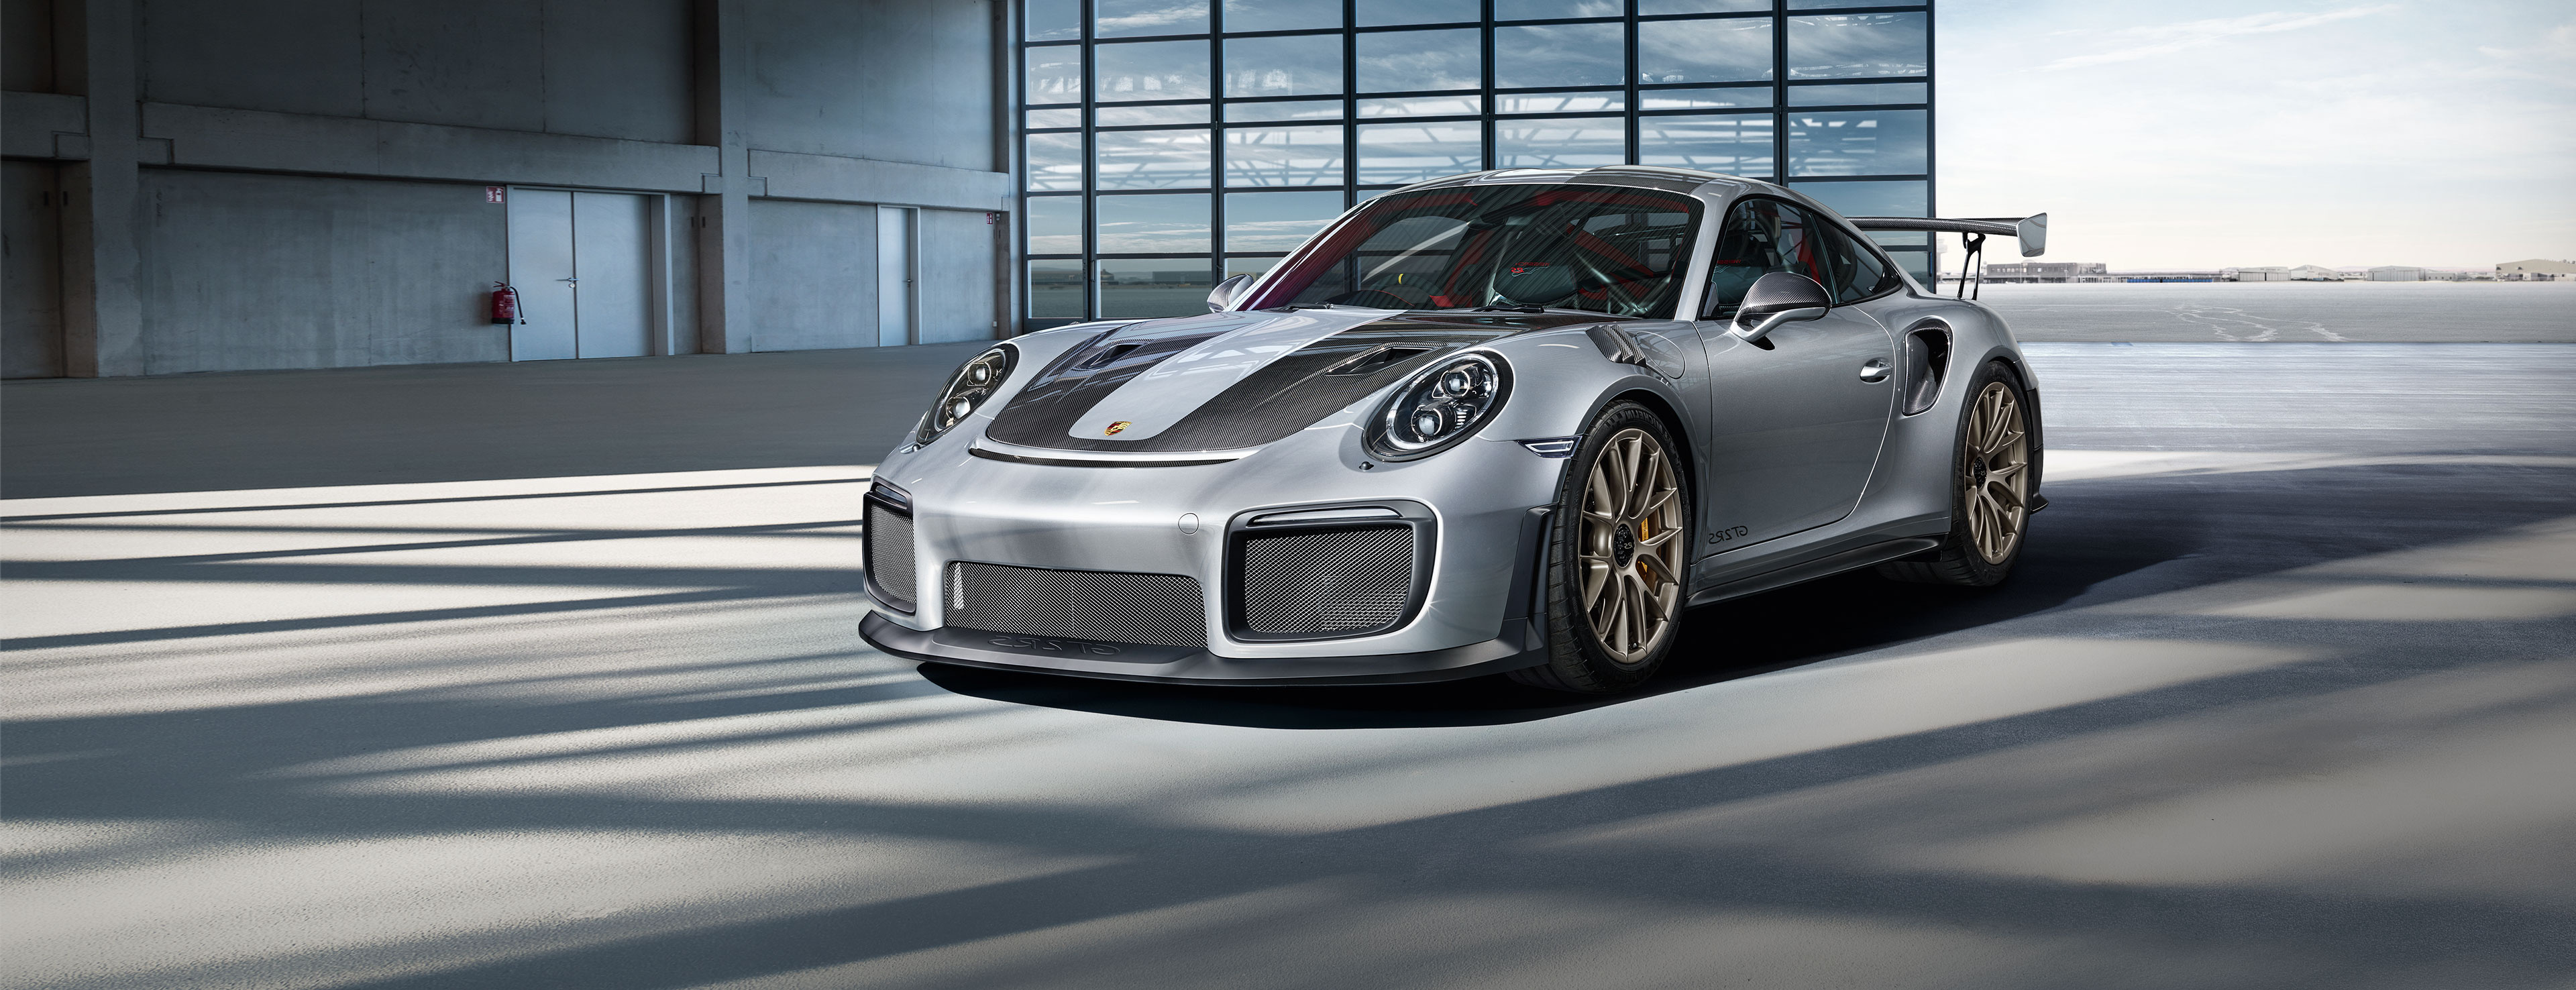 Porsche Dessin Nouveau Image 911 Gt2 Rs Les Modèles 911 Modèles Dr Ing H C F